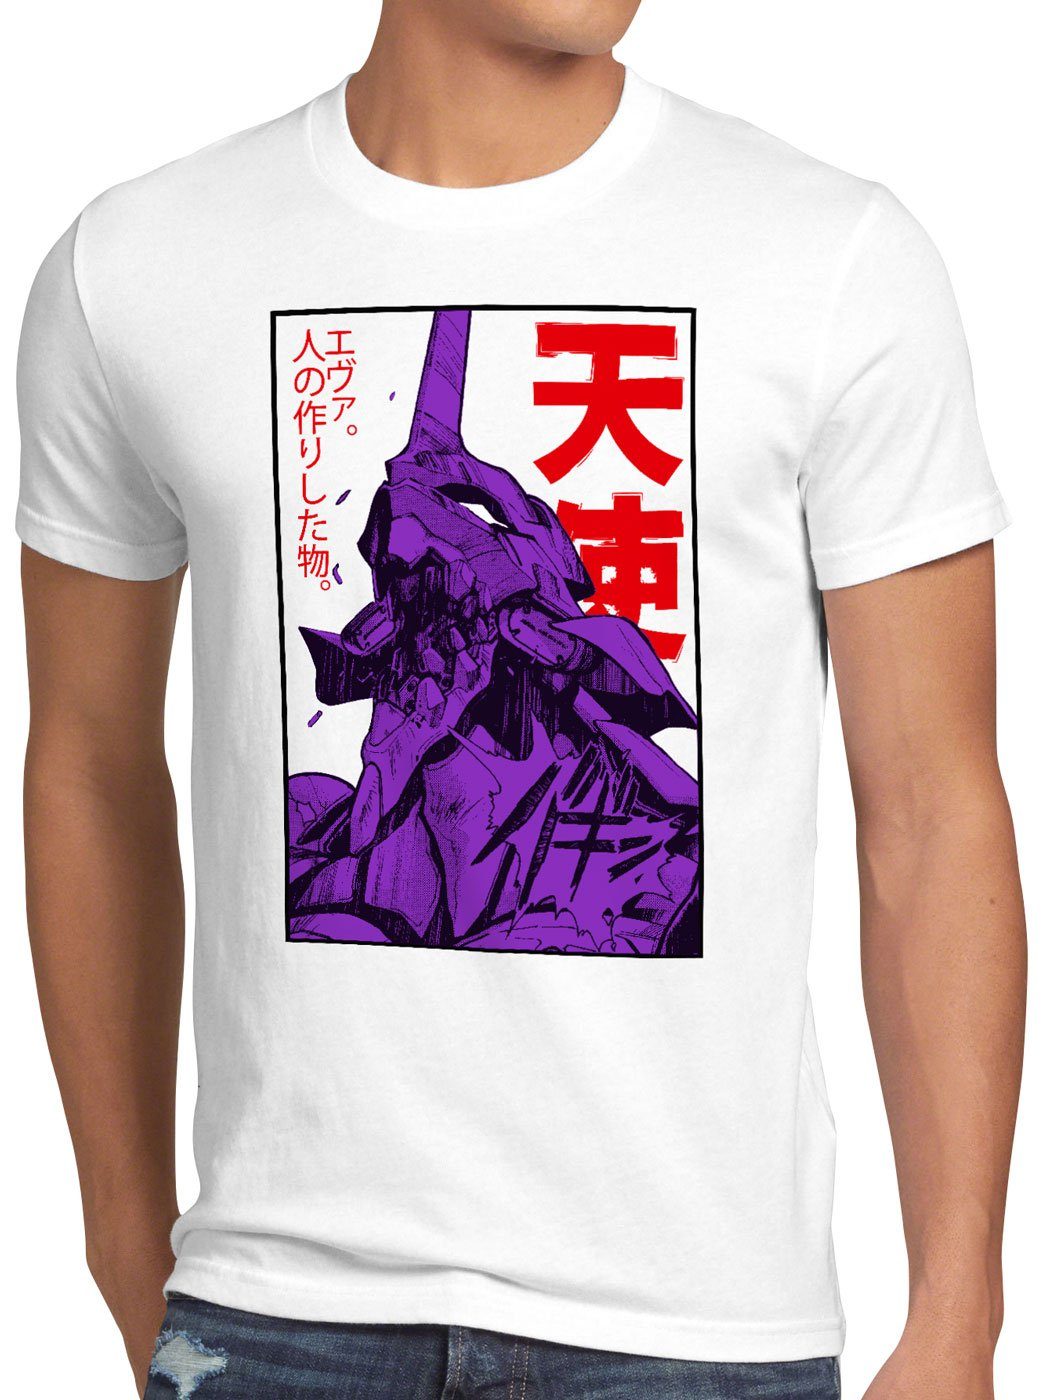 Print-Shirt 3 Herren T-Shirt evangelion anime Rage style3 japanisch Neo-Tokyo weiß